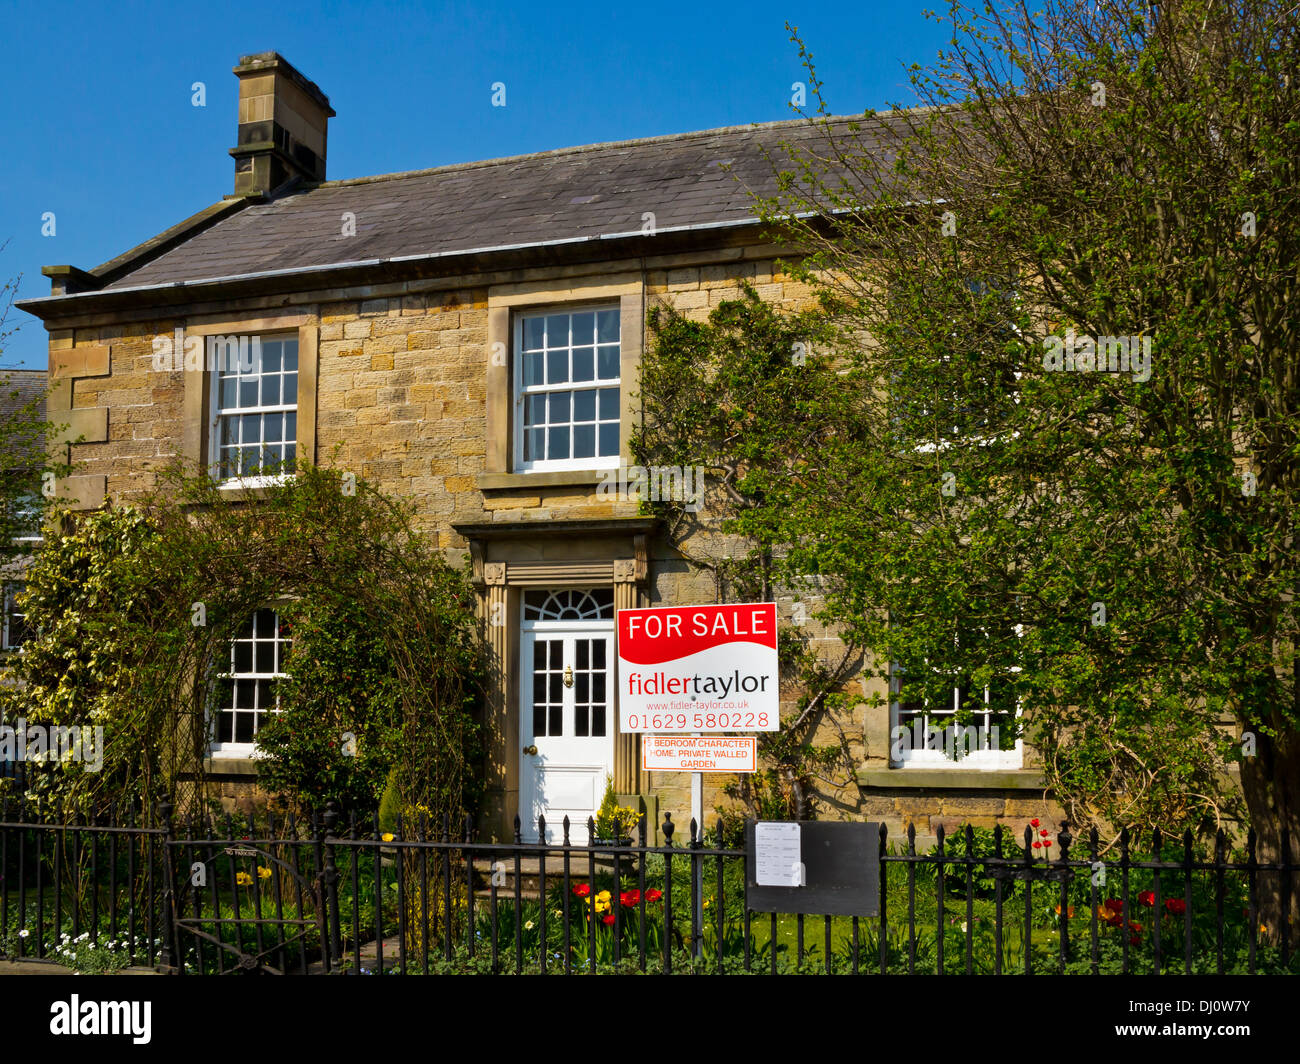 Pierre idyllique maison de campagne à vendre à Hartington un village dans le Derbyshire Dales Parc national de Peak District England UK Banque D'Images